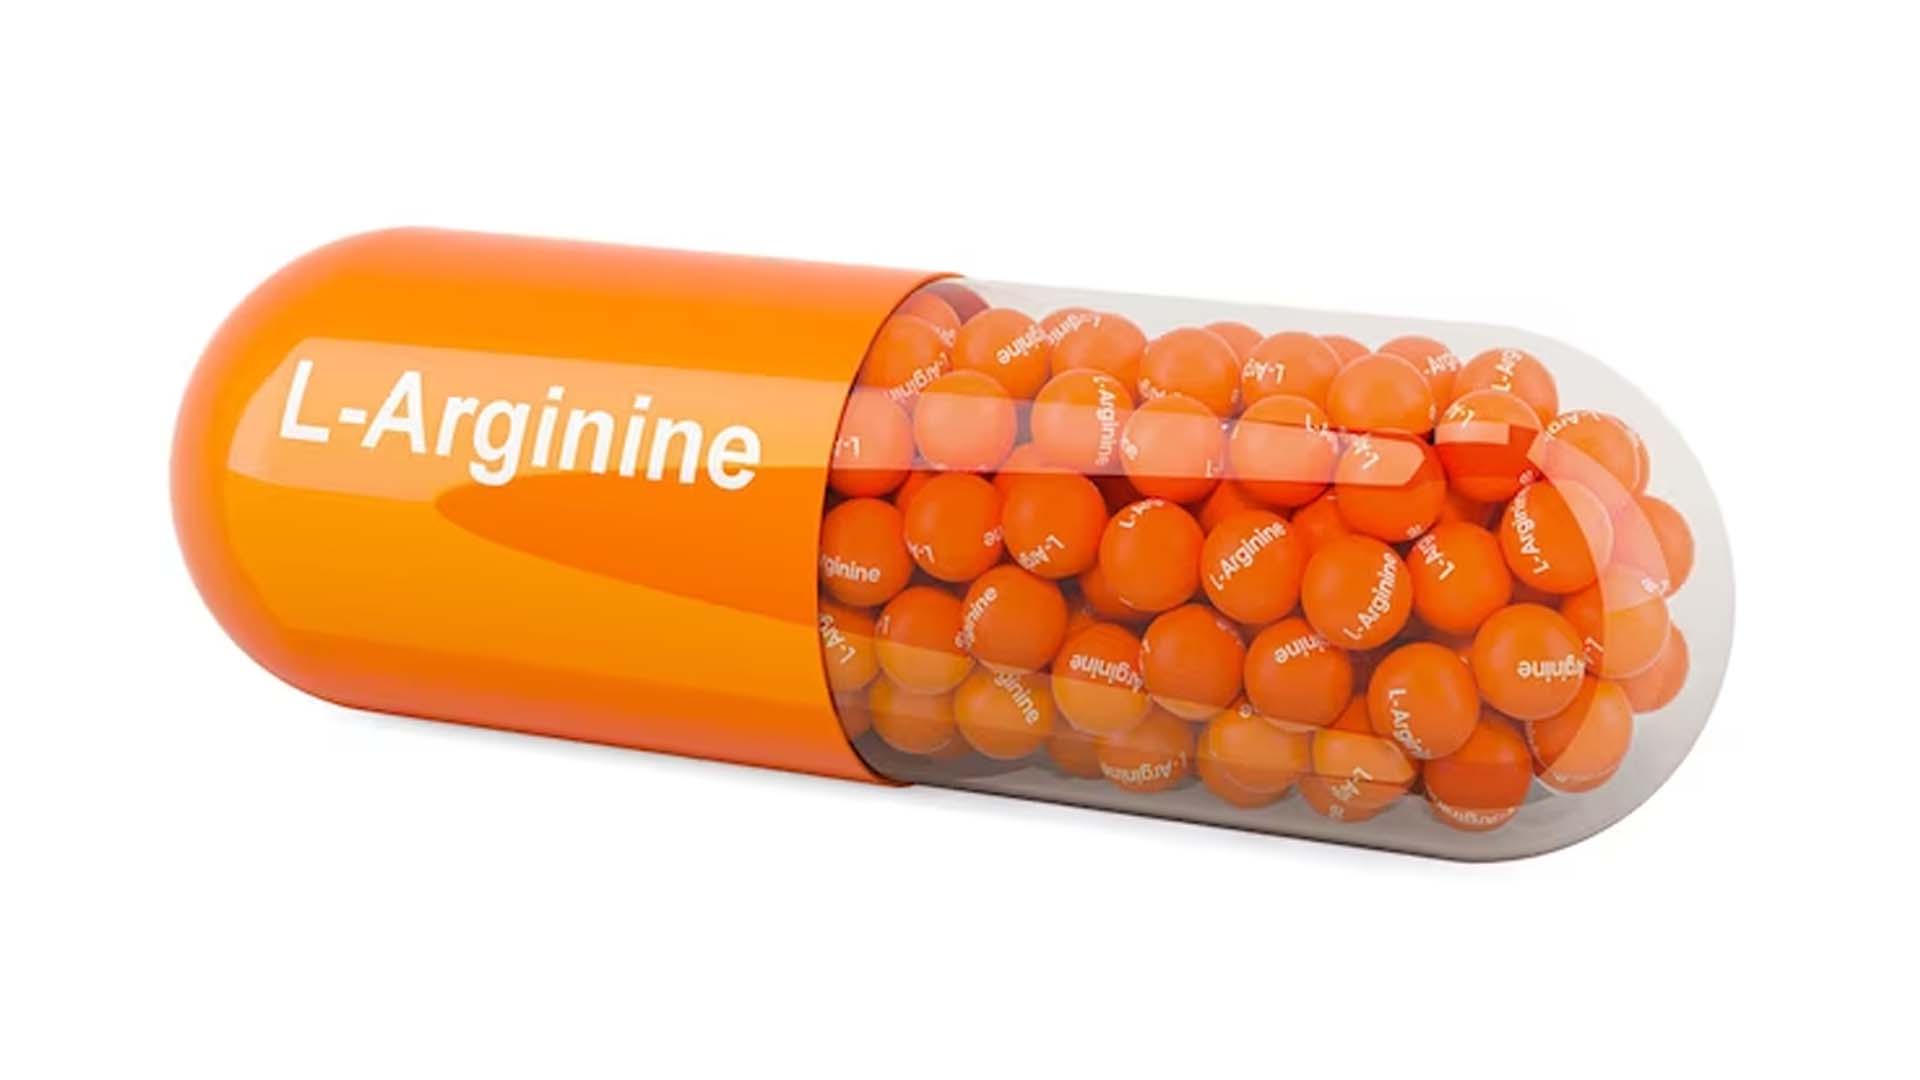 L-arginine capsule